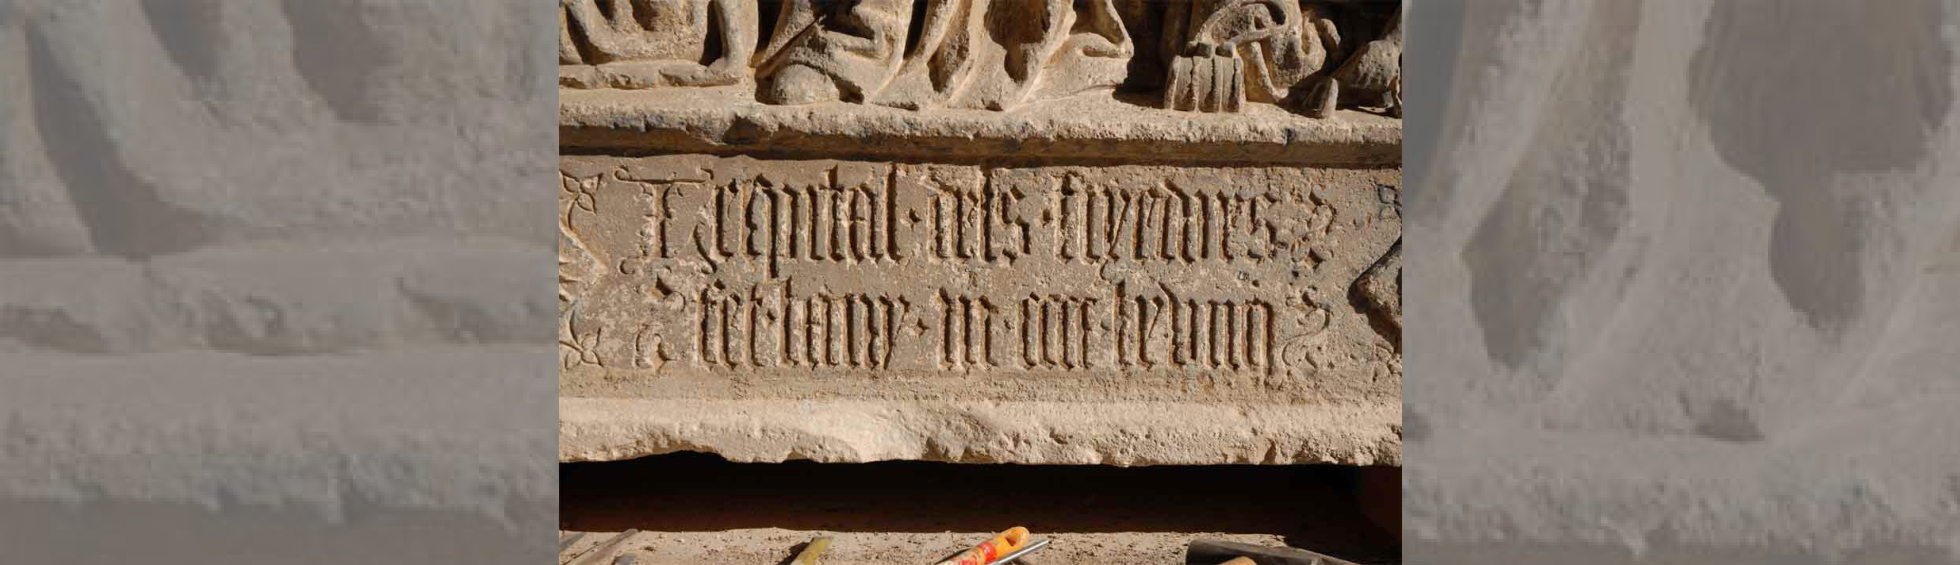 Inscription: l'hosptital dels tixadors  fit lani 1469 en chiffre romain et lettres gothiques